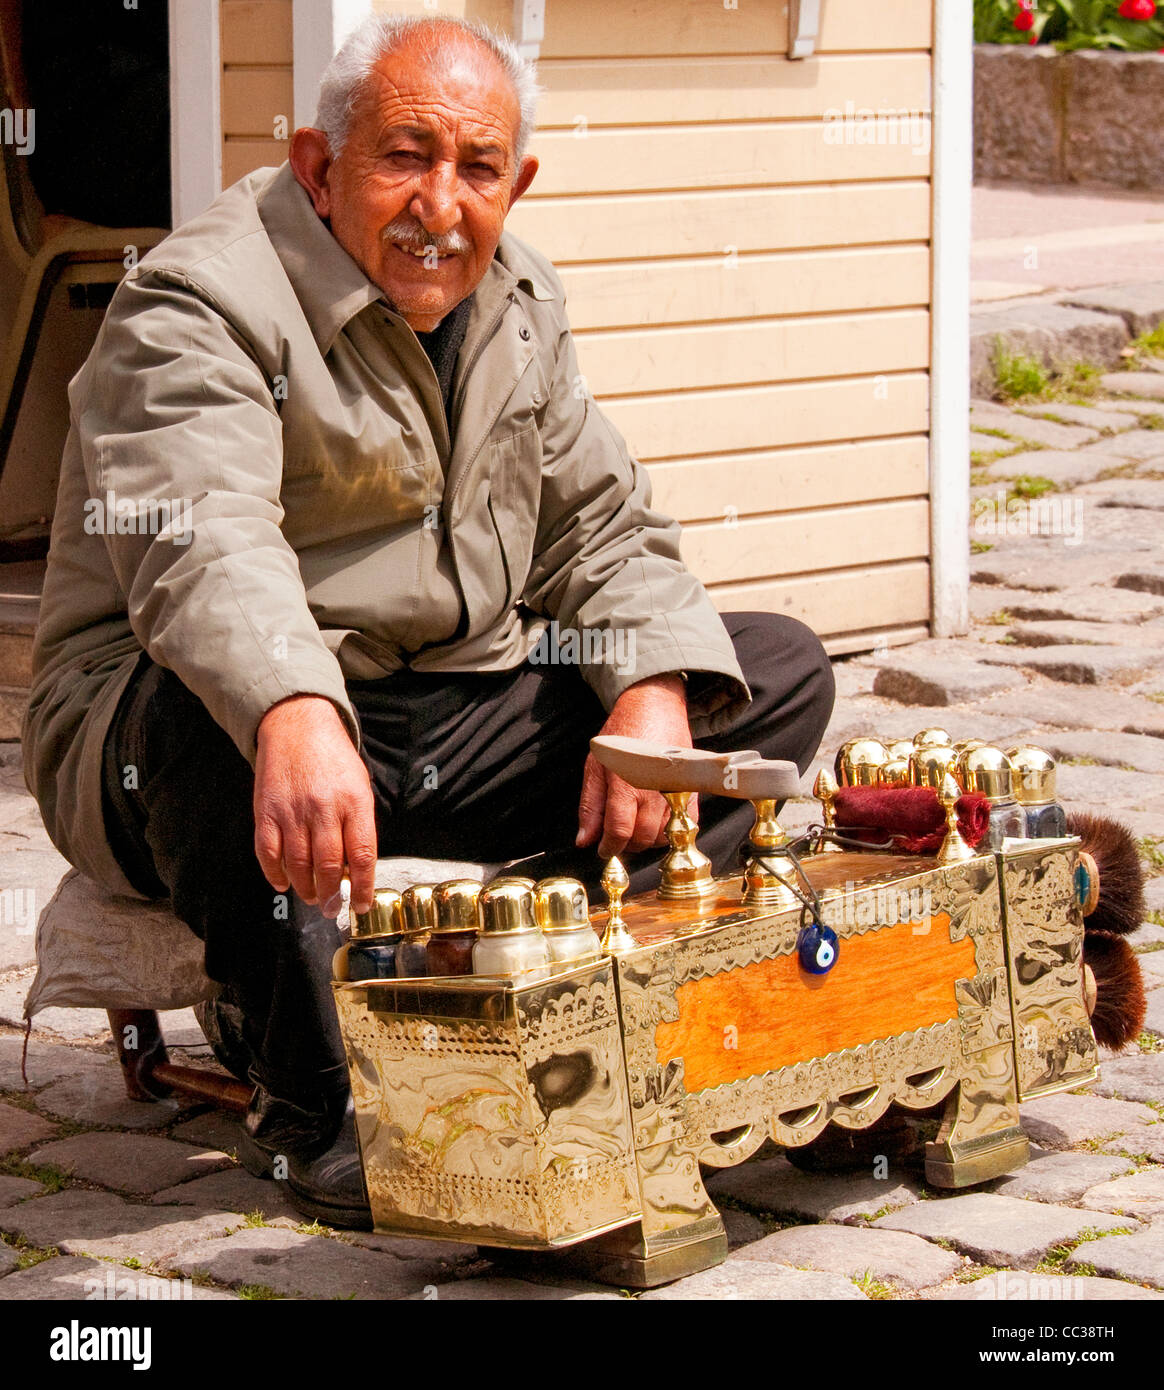 Homme avec ses chaussures cirées d'entreprise mis en place dans cette rue, Istanbul, Turquie Banque D'Images